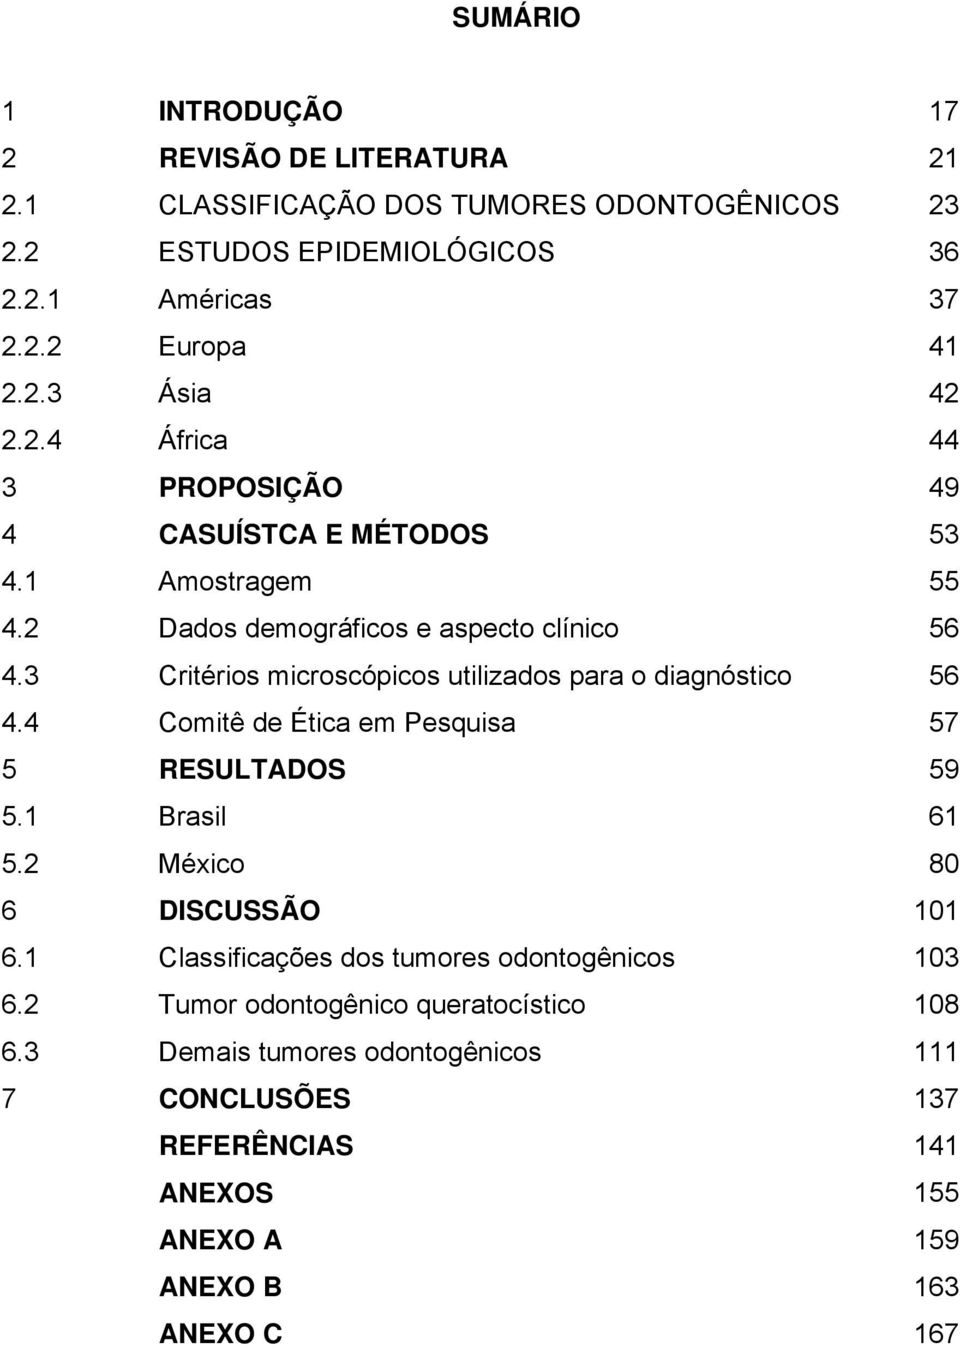 3 Critérios microscópicos utilizados para o diagnóstico 56 4.4 Comitê de Ética em Pesquisa 57 5 RESULTADOS 59 5.1 Brasil 61 5.2 México 80 6 DISCUSSÃO 101 6.